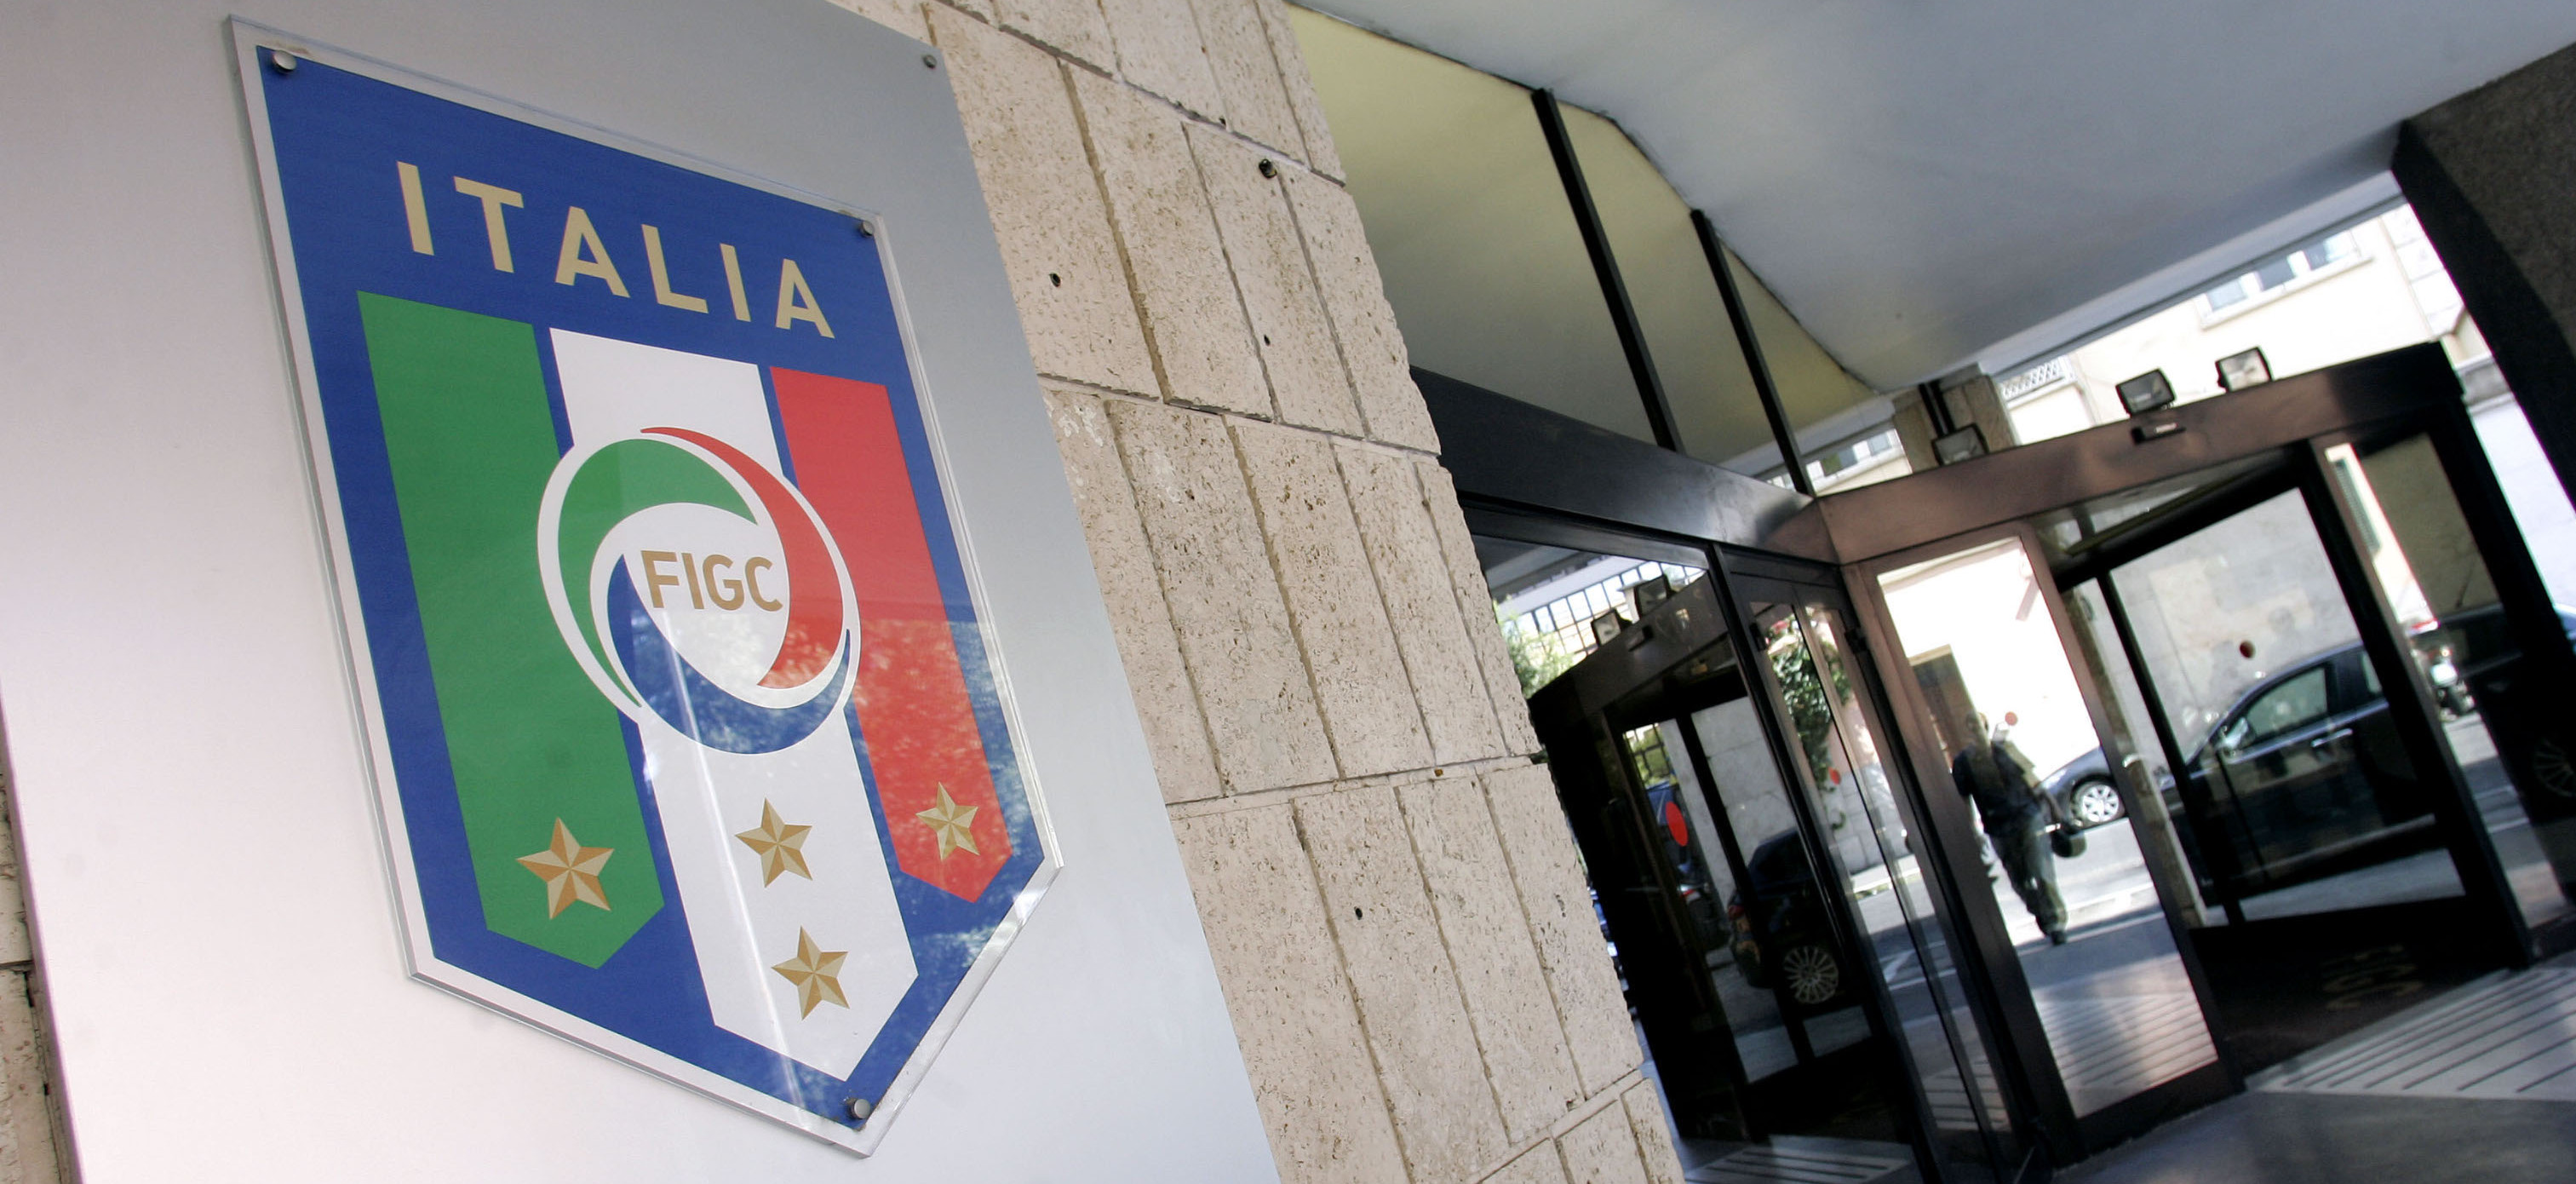 Calcio – I deferimenti per gli scandali plasmano la Serie B: l’organico prende forma